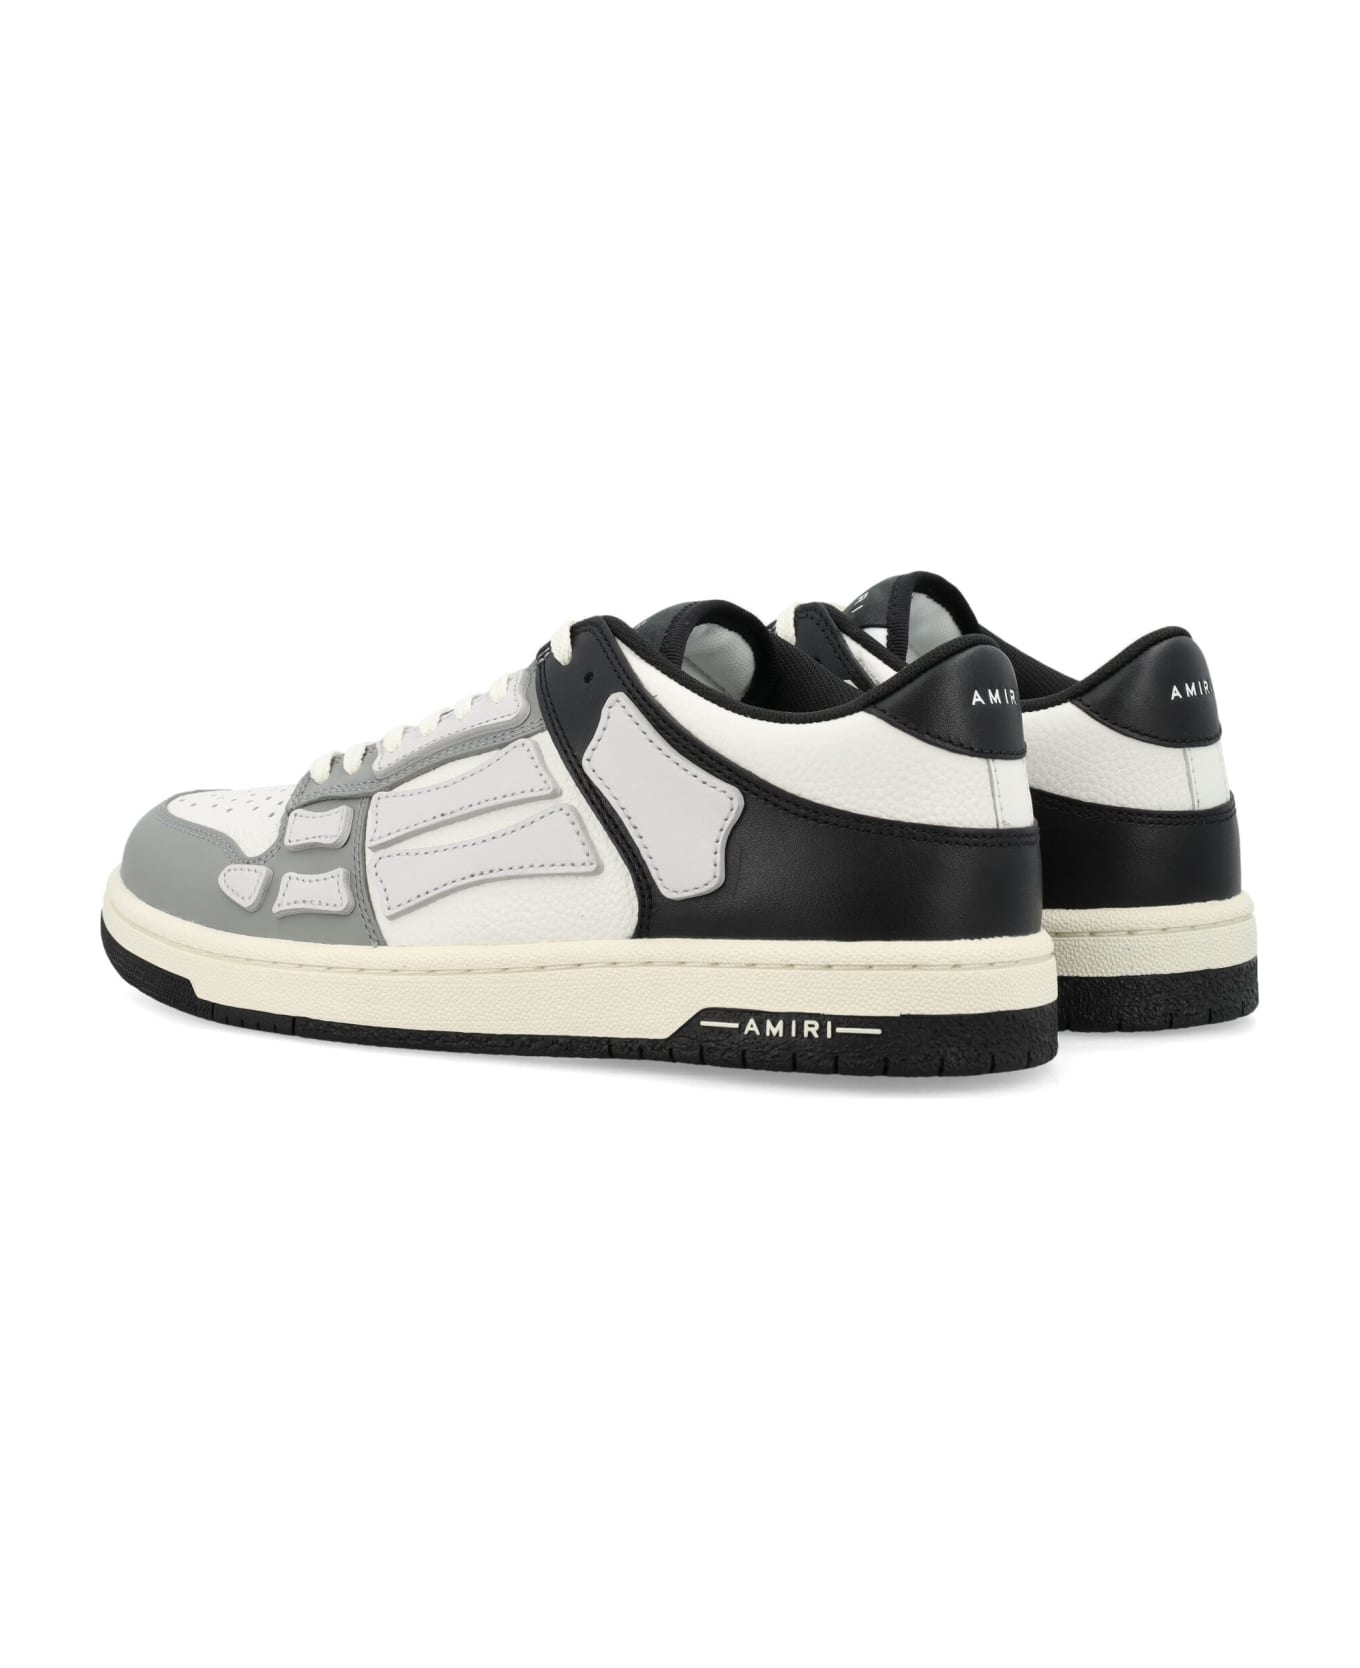 AMIRI Two-tone Skel Top Low Sneakers - BLACK WHITE GREY スニーカー